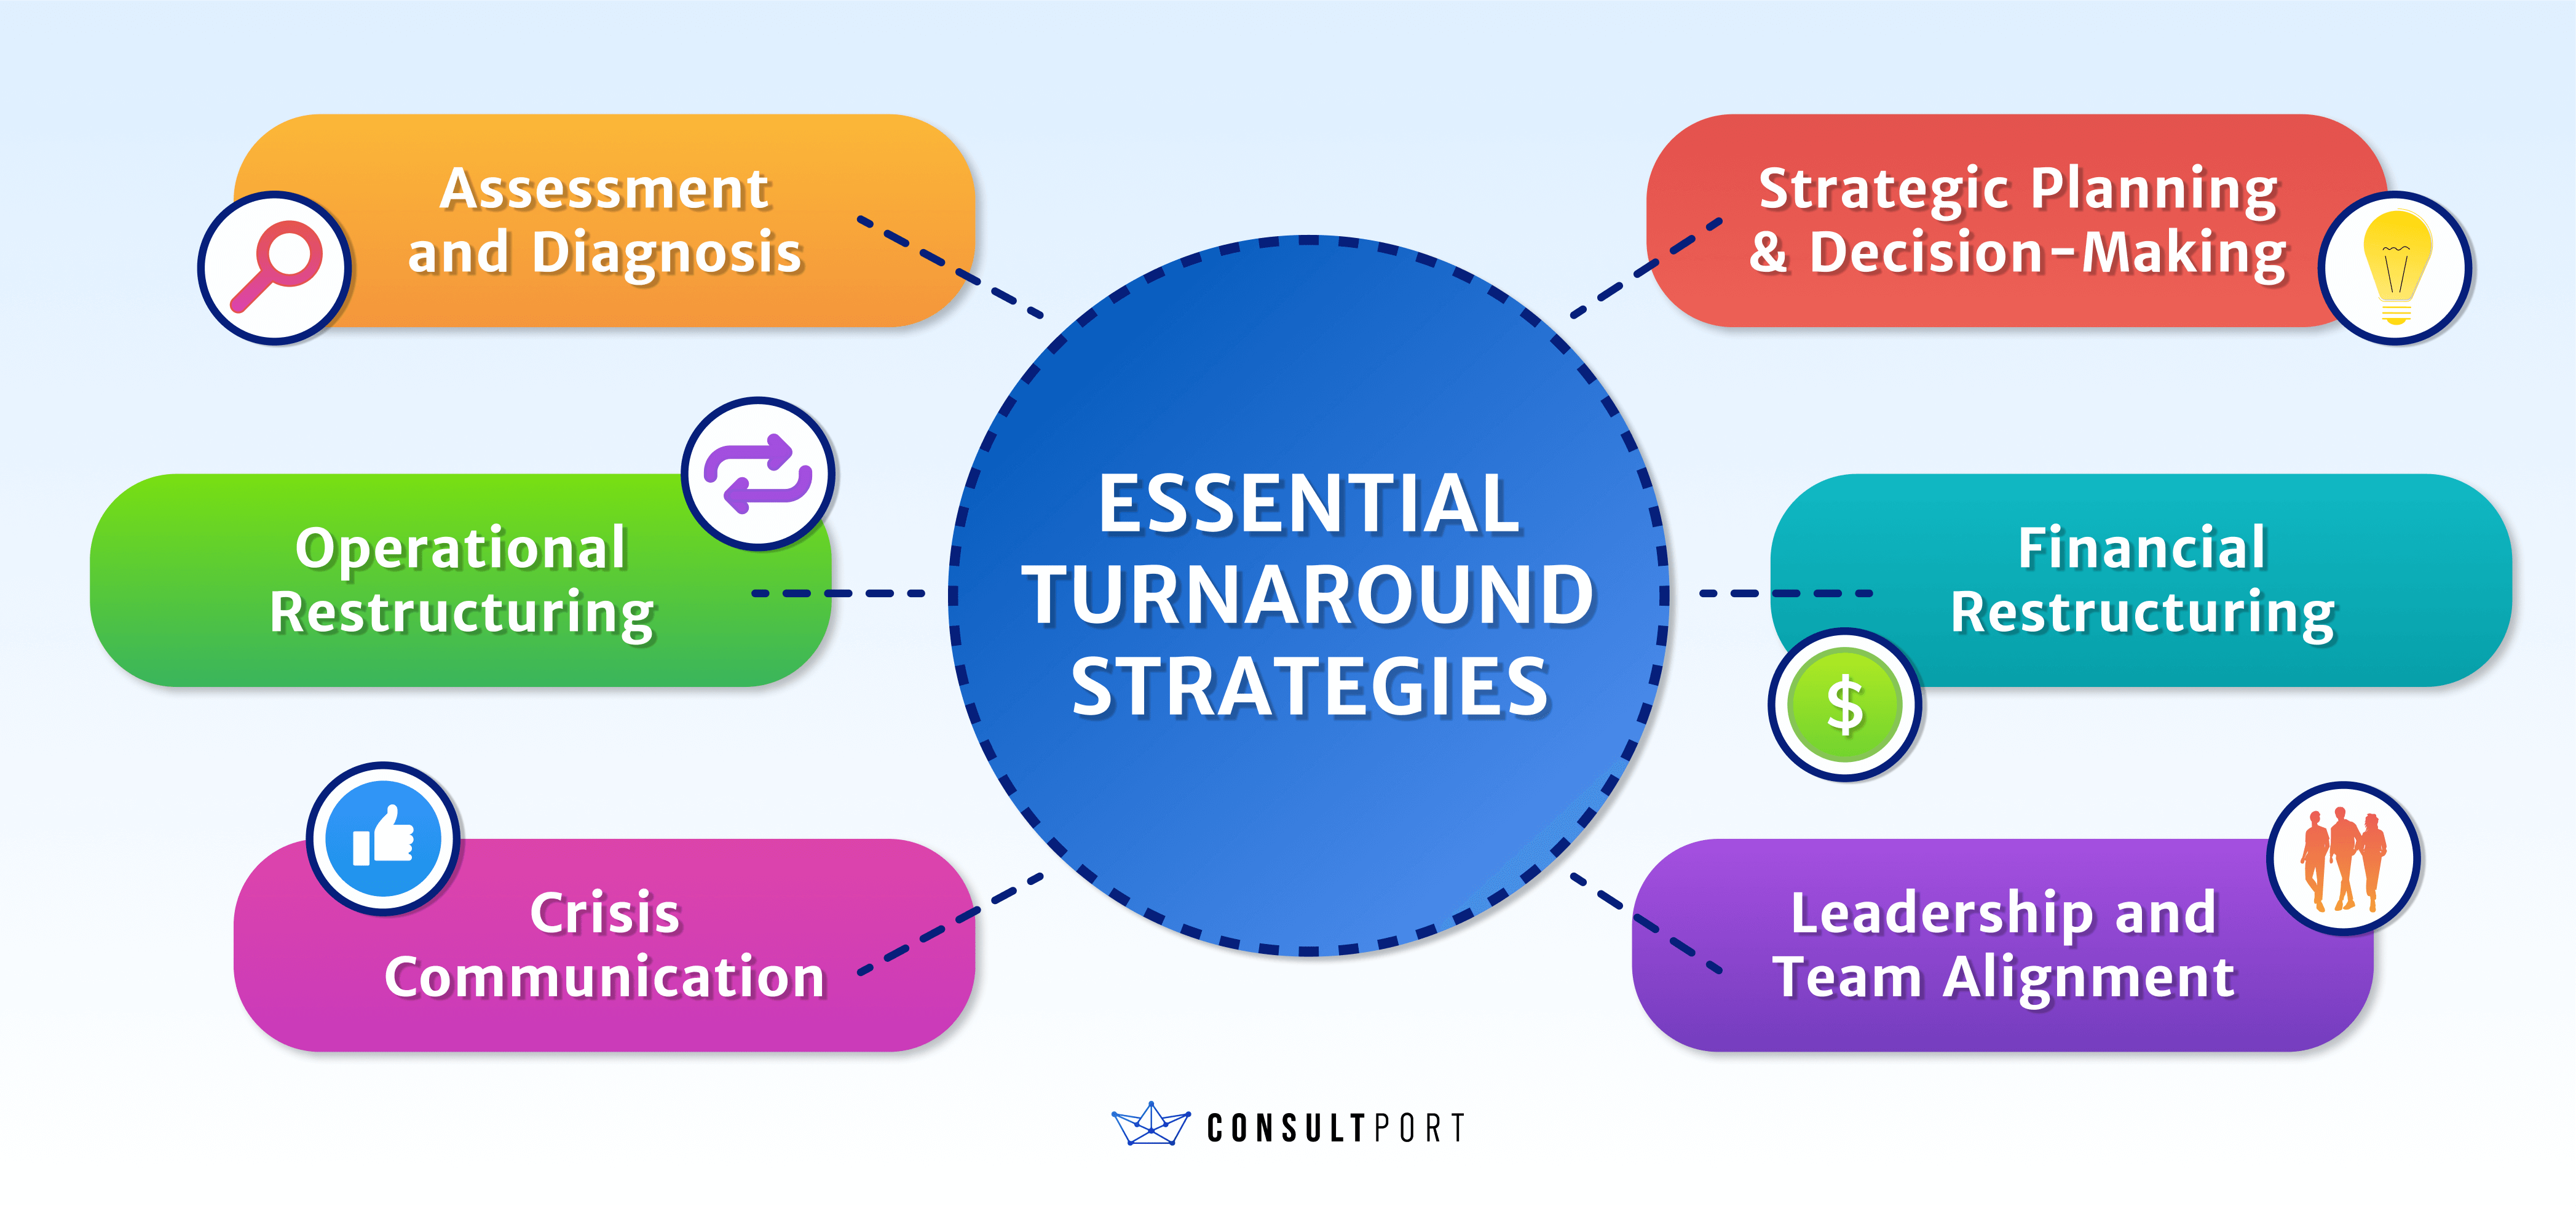 6 Essential Turnaround Strategies